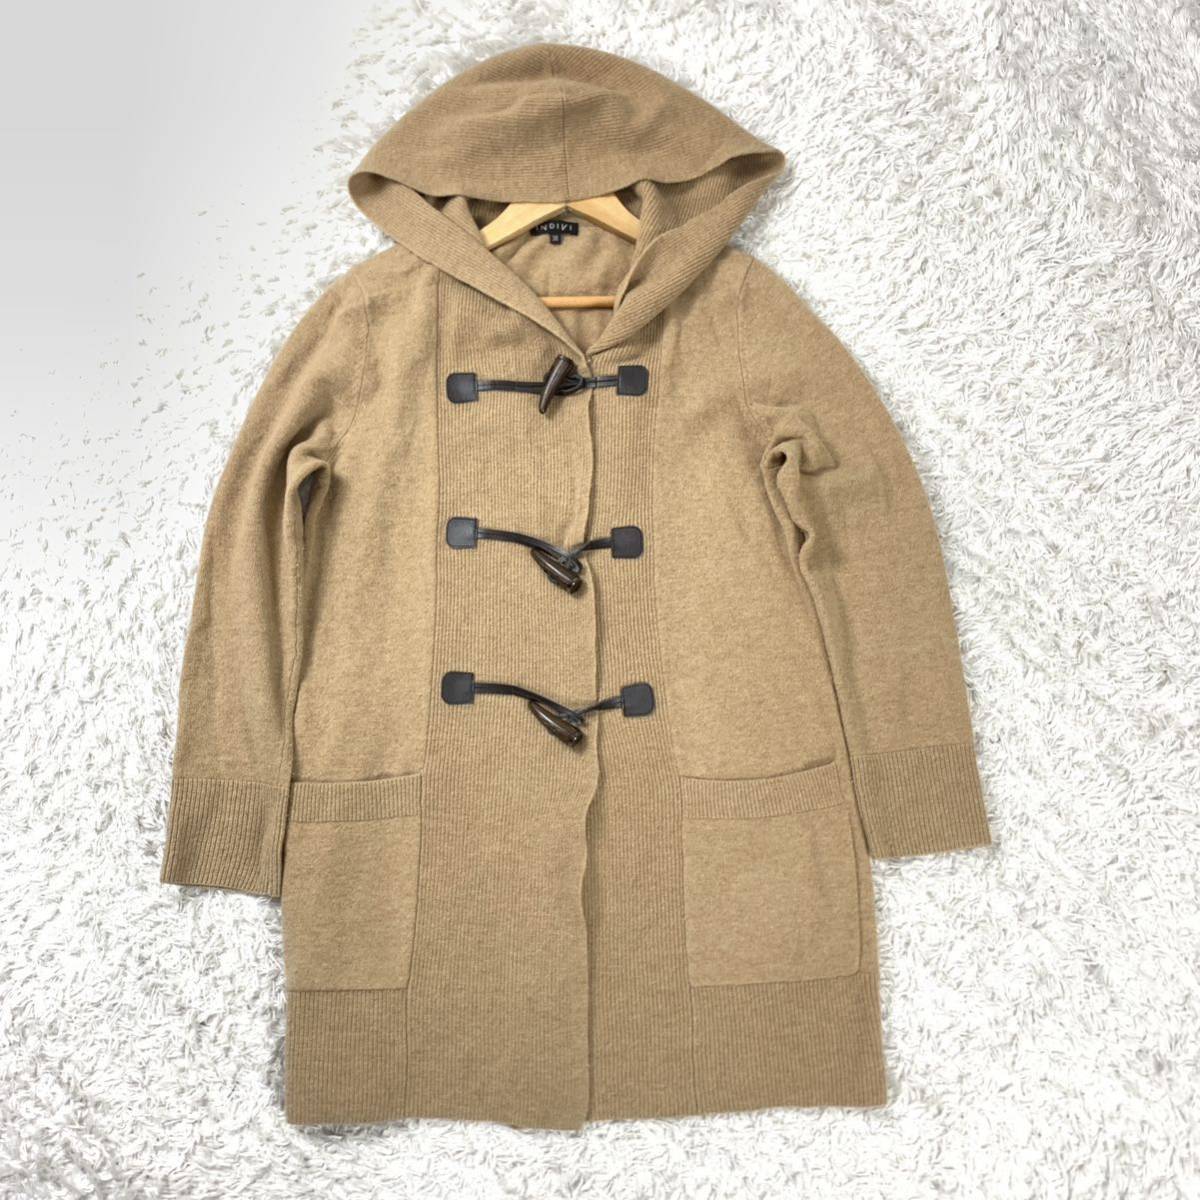  Indivi knitted cardigan duffle coat beige wool 38 YA5018